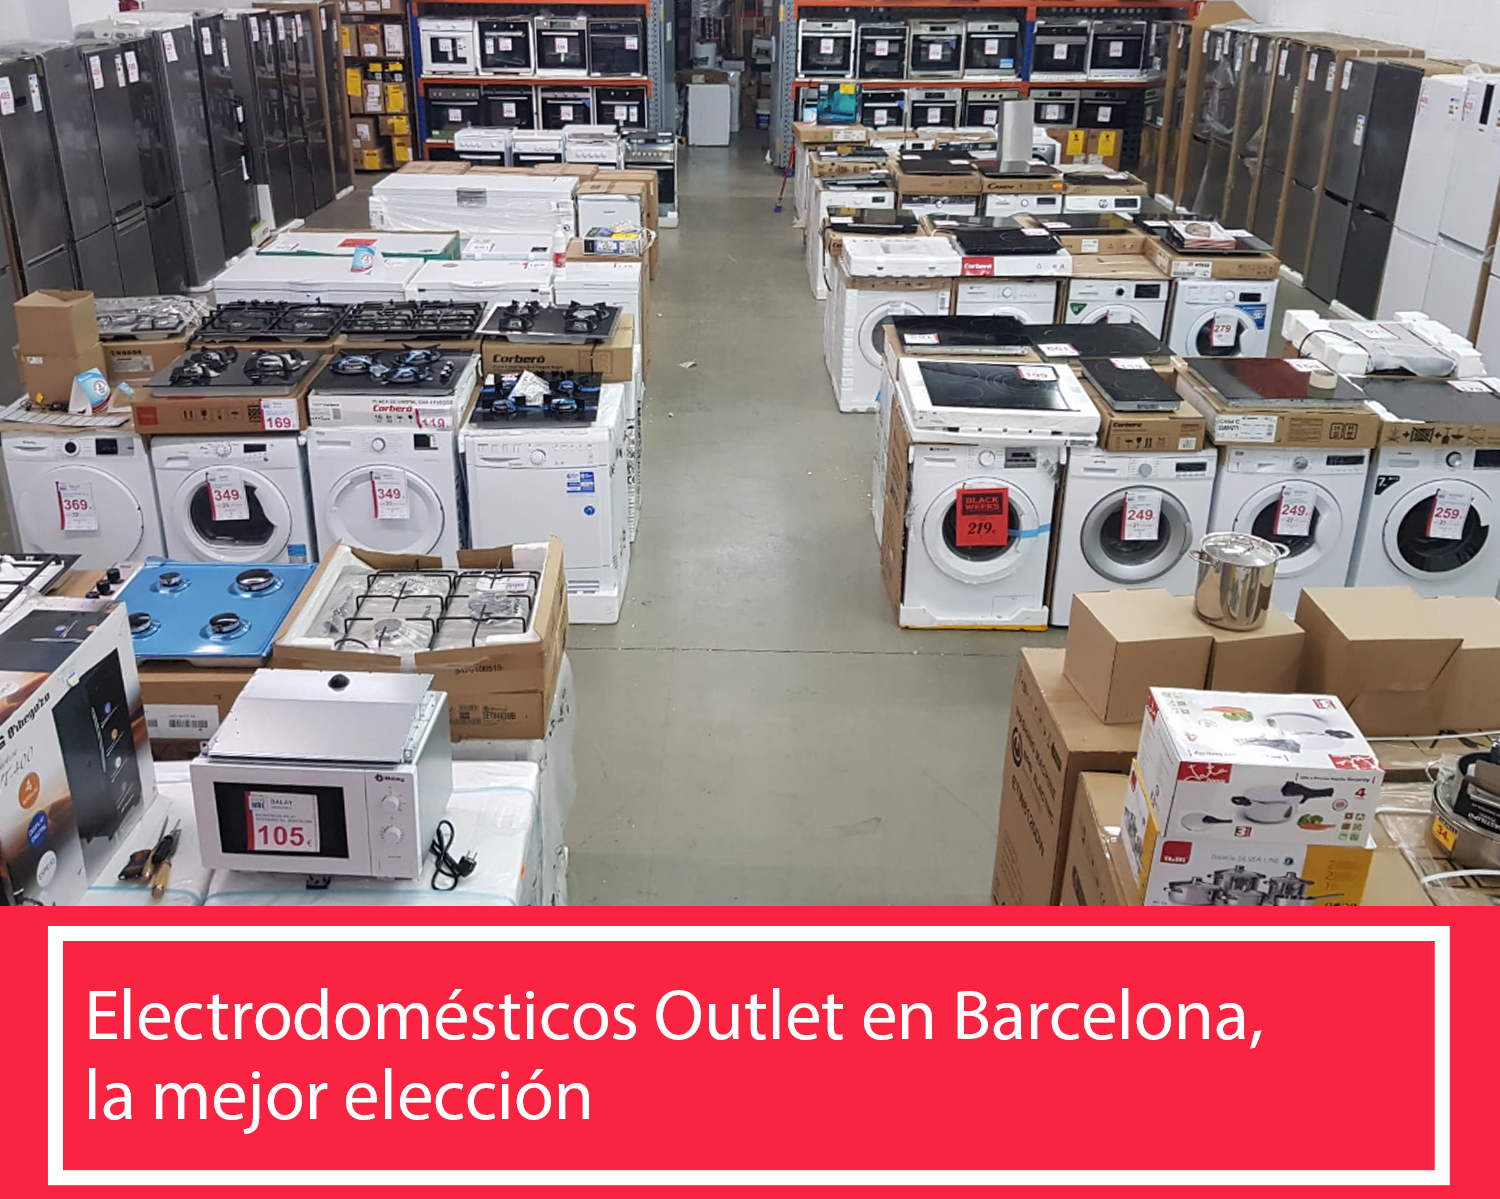 Articulos Disponibles, Electrodomésticos baratos nuevos a precio de tara  con tienda en barcelona